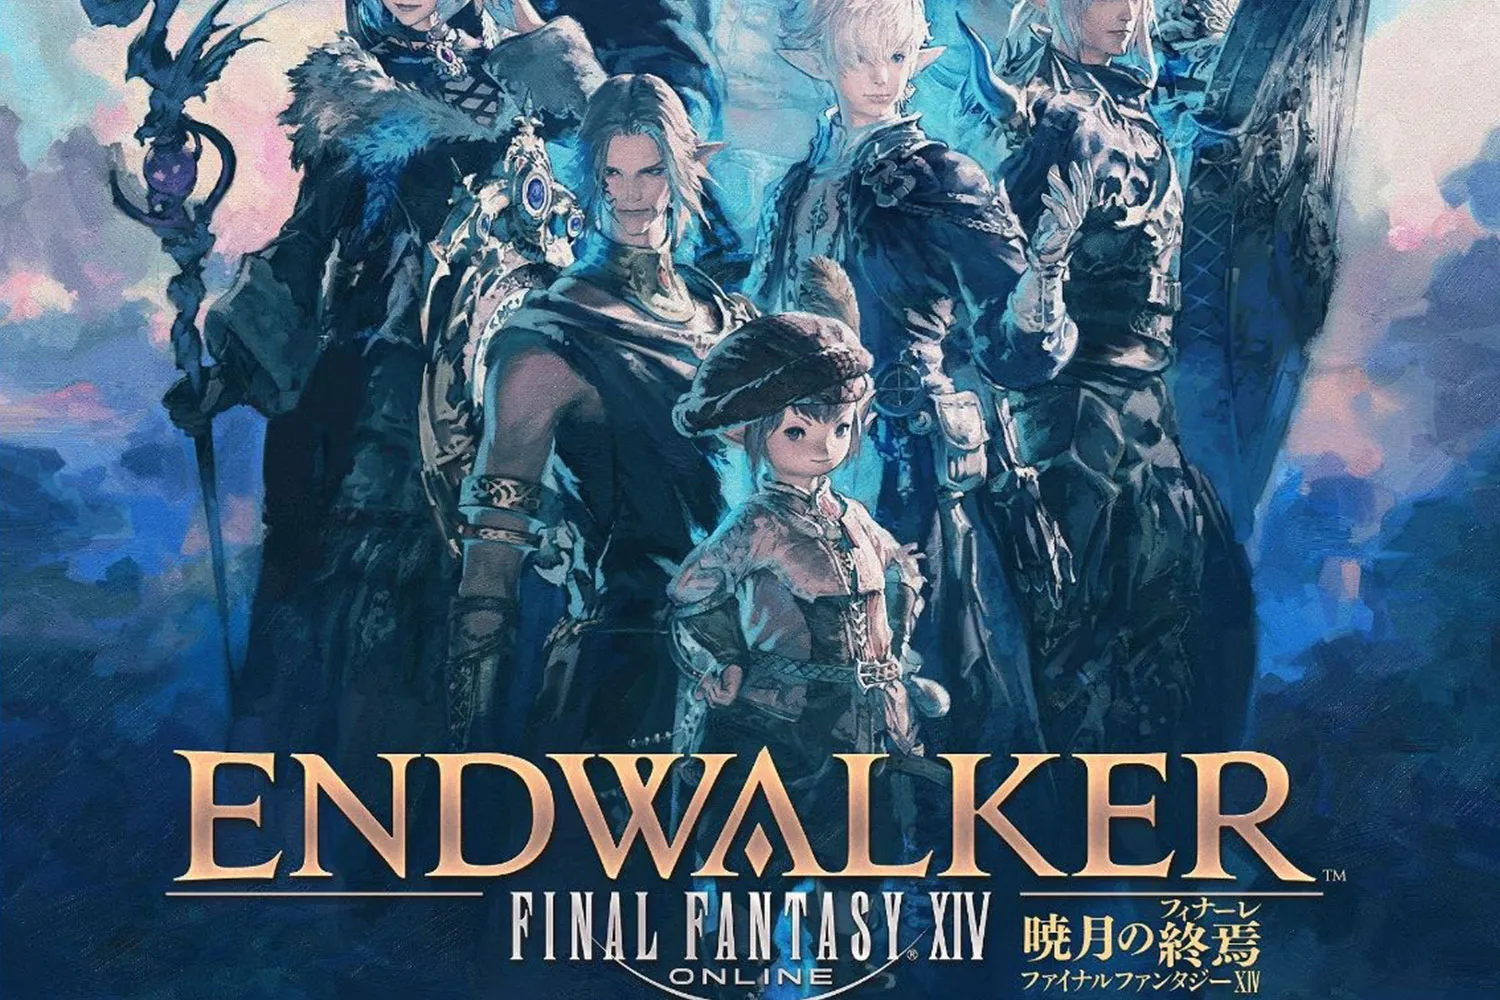 Final Fantasy Xiv Endwalker Release Date And Details Gamer Journalist